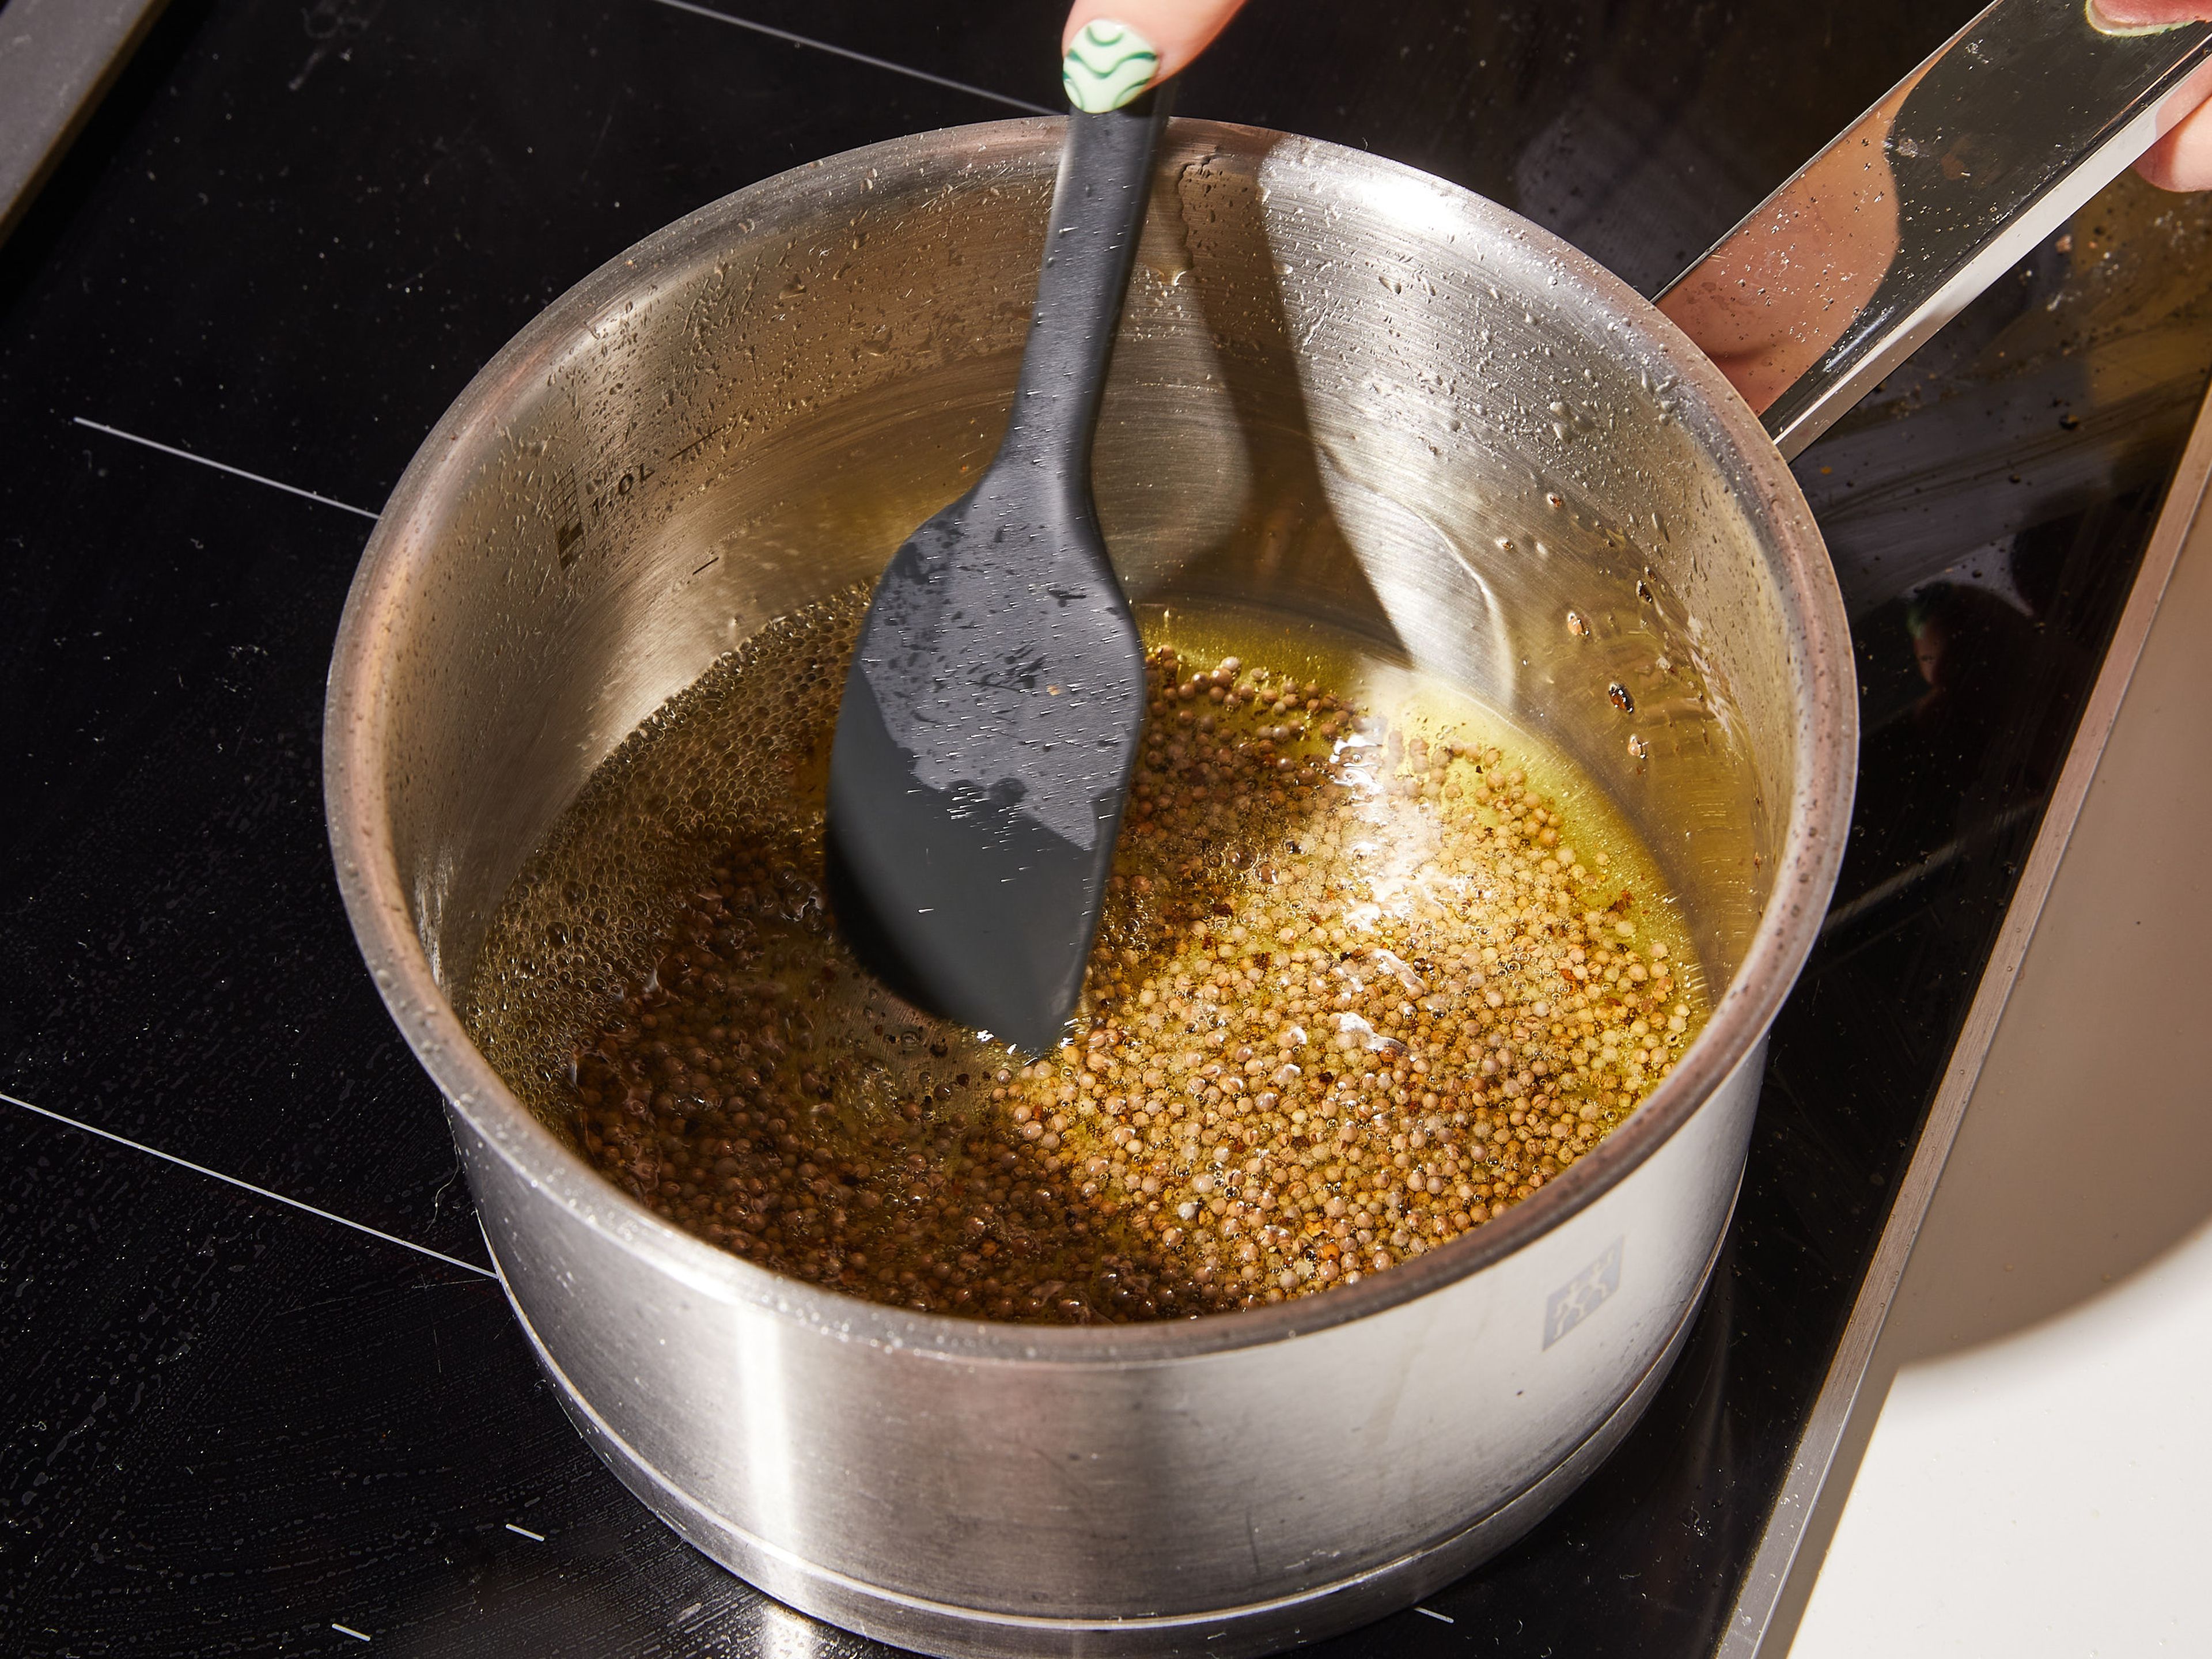 Senfsaat mit schwarzem Pfeffer und Olivenöl in einem kleinen Topf erhitzen, bis die Senfsaat anfängt zu knistern, nach Popcorn riecht und sich leicht hellbraun färbt. Die heiße Ölmischung direkt zum Orangenabrieb in die Schüssel geben. Dann Senf, Honig, Essig und Salz hinzufügen und alles mit einem Schneebesen zu einem cremigen Dressing verrühren.